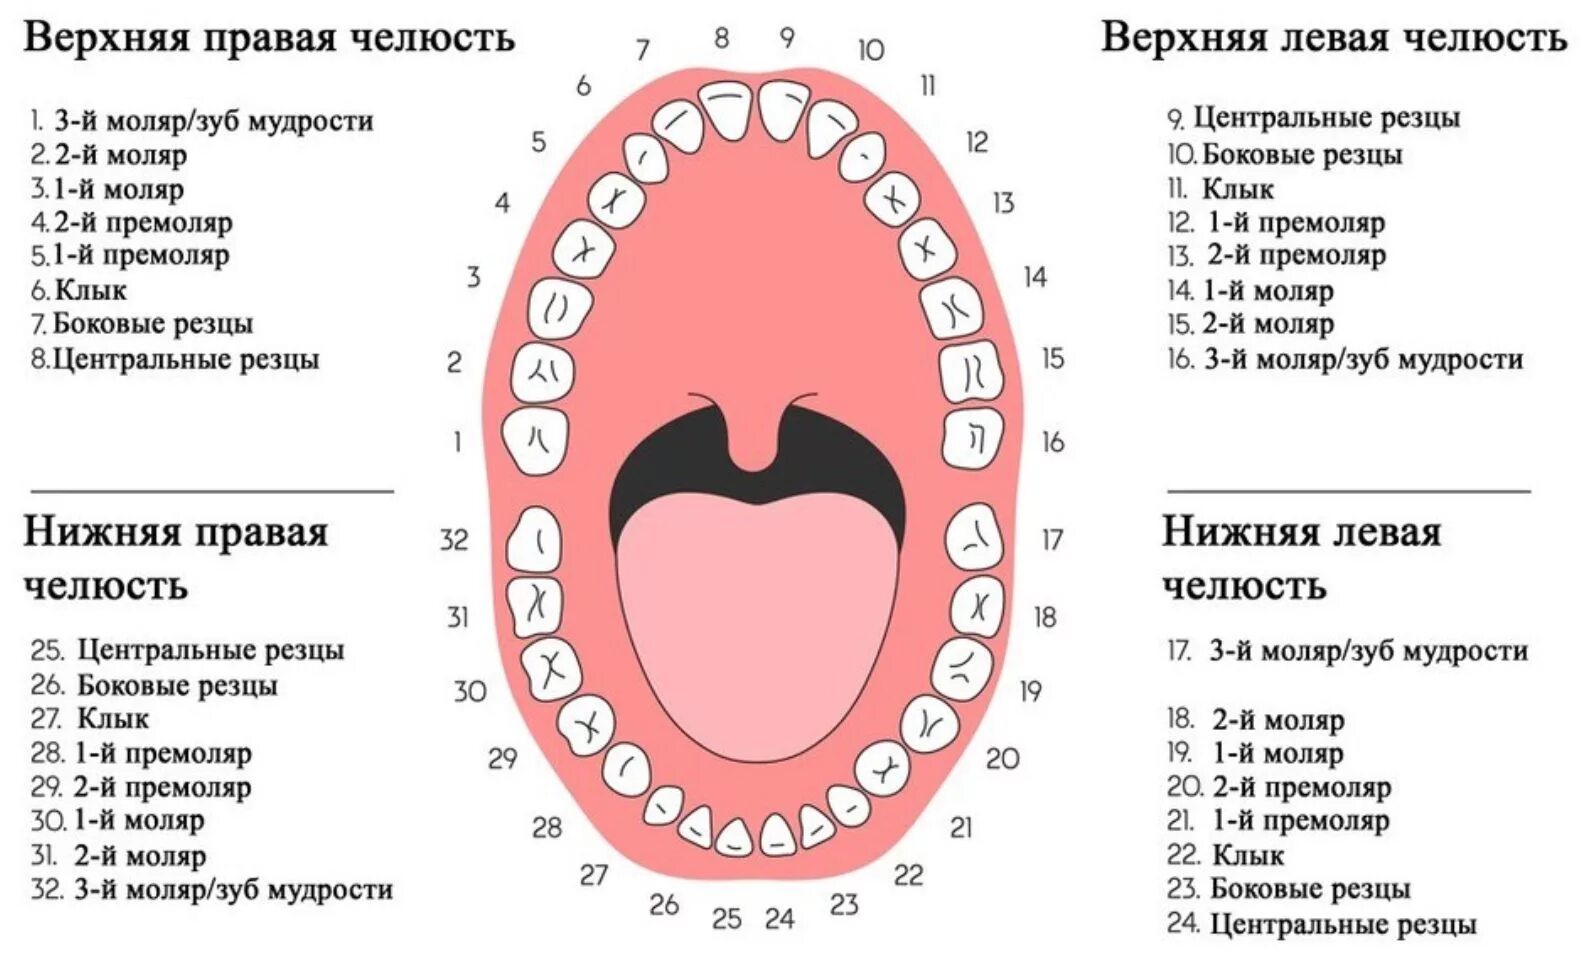 Зуб 1 8. Зубы нижняя челюсть нумерация зубов. Нумерация детских зубов в стоматологии схема. Нумерация зубов человеческой челюсти. Схема зубов человека с нумерацией стоматологии.